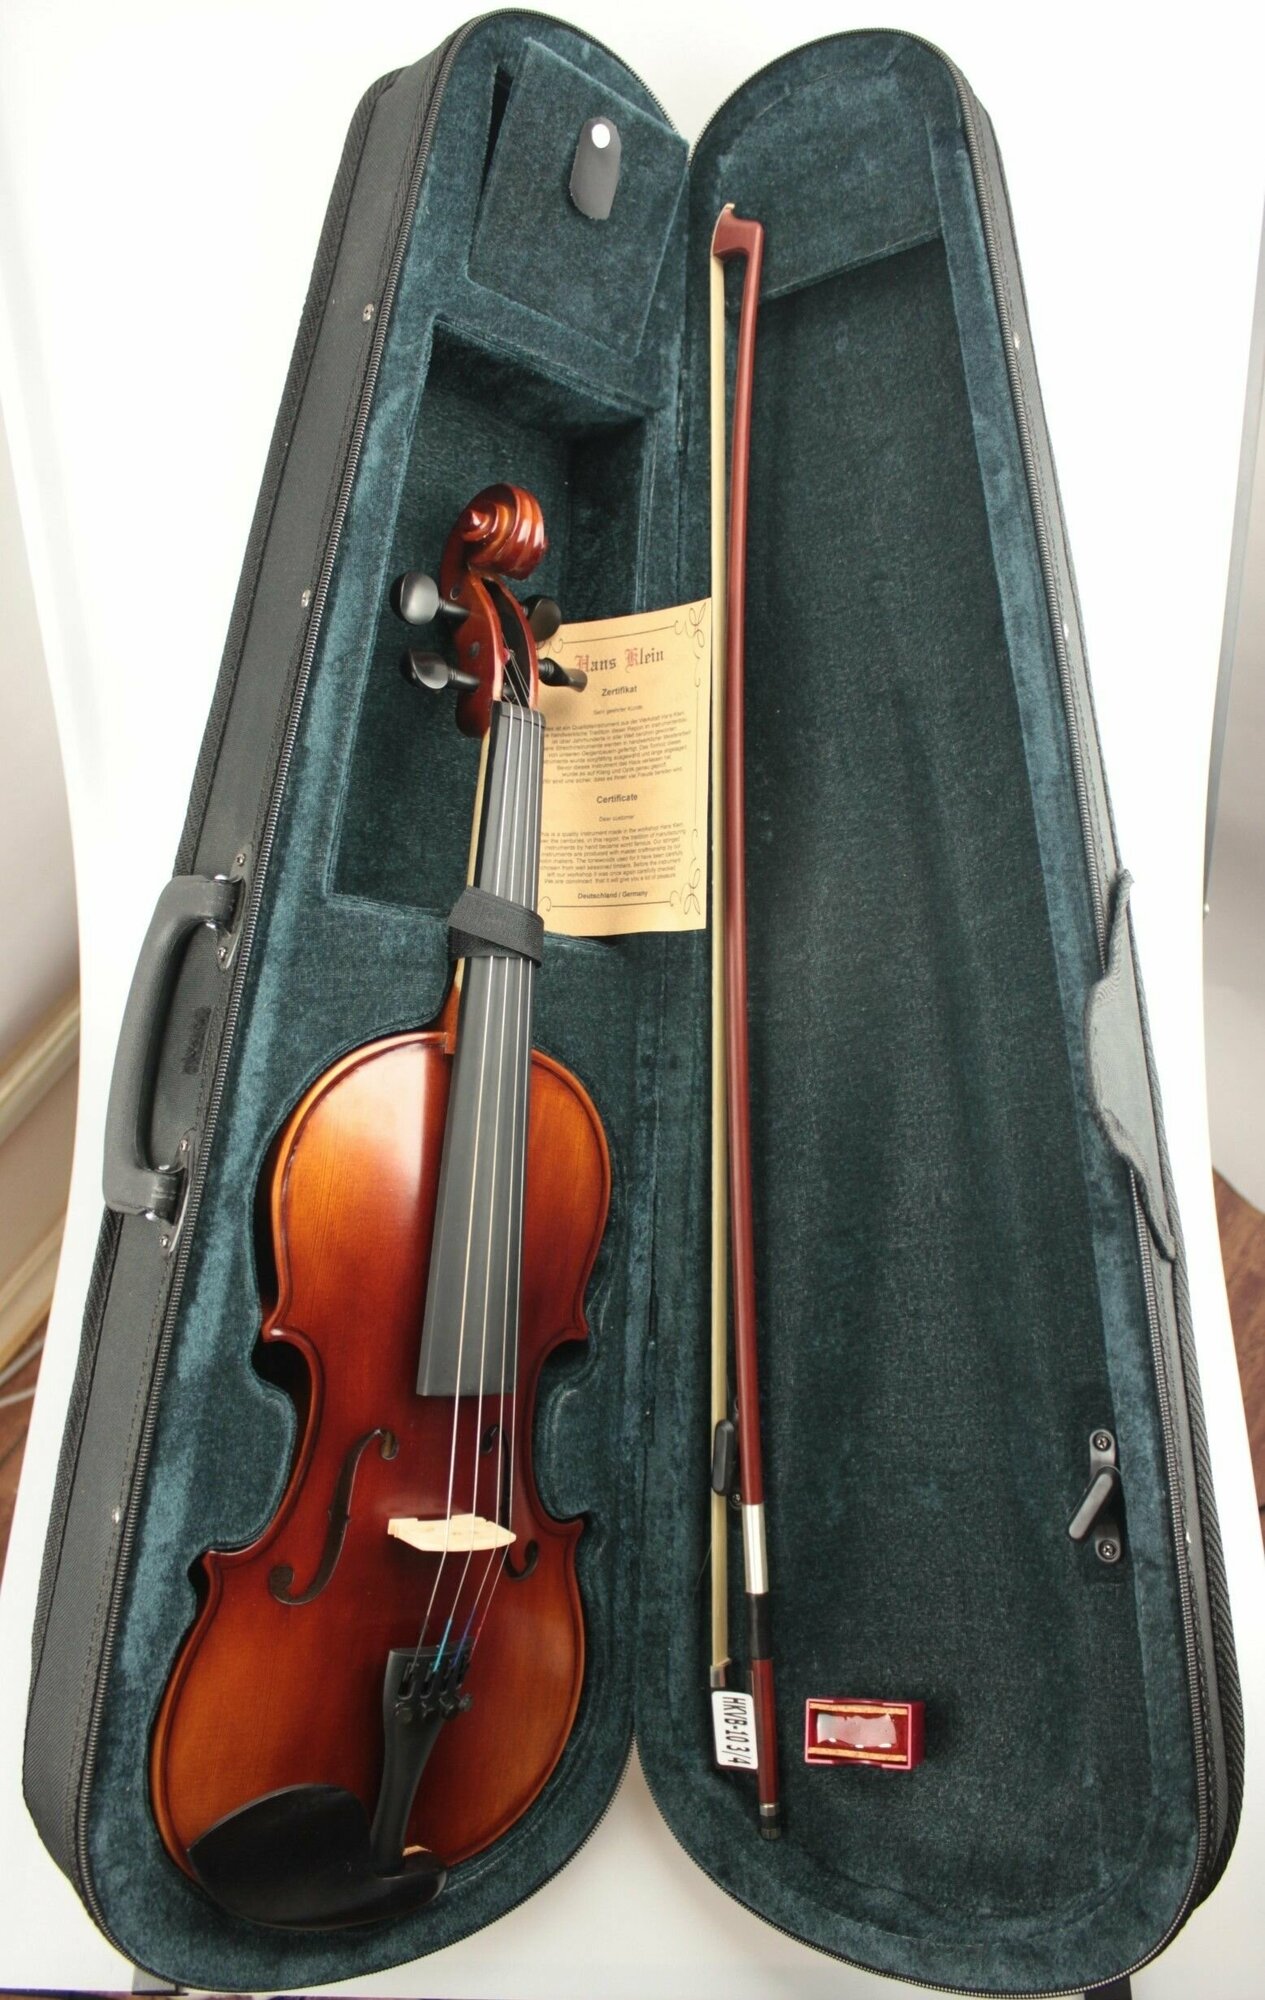 Скрипка 3/4 HANS KLEIN HKV-2 GW (лицензия Германии, производство Китай) комплект